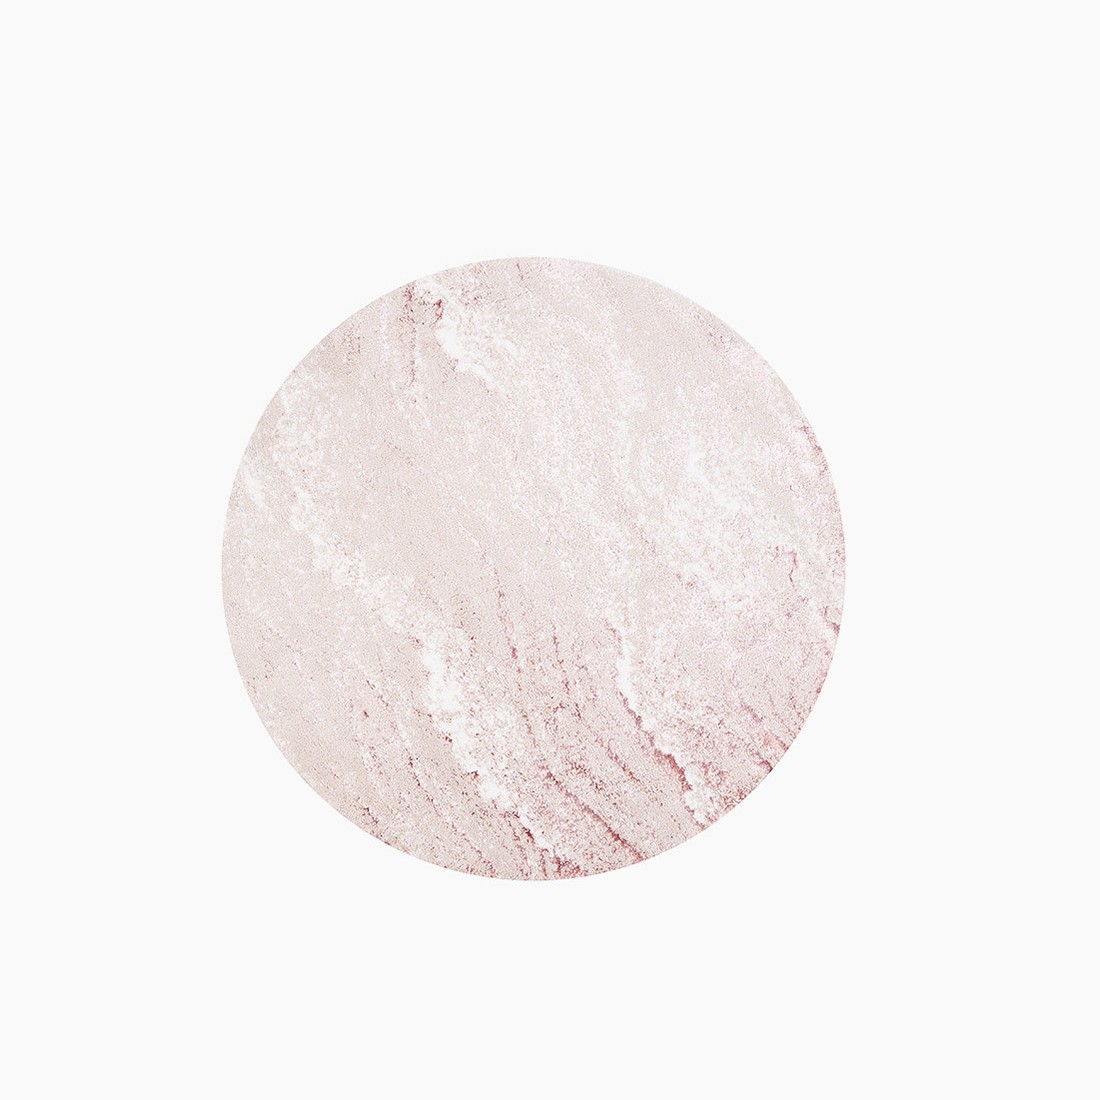 Коврик для ванной Fabian цвет: розовый (70х70 см), размер 70х70 см sofi881575 Коврик для ванной Fabian цвет: розовый (70х70 см) - фото 1